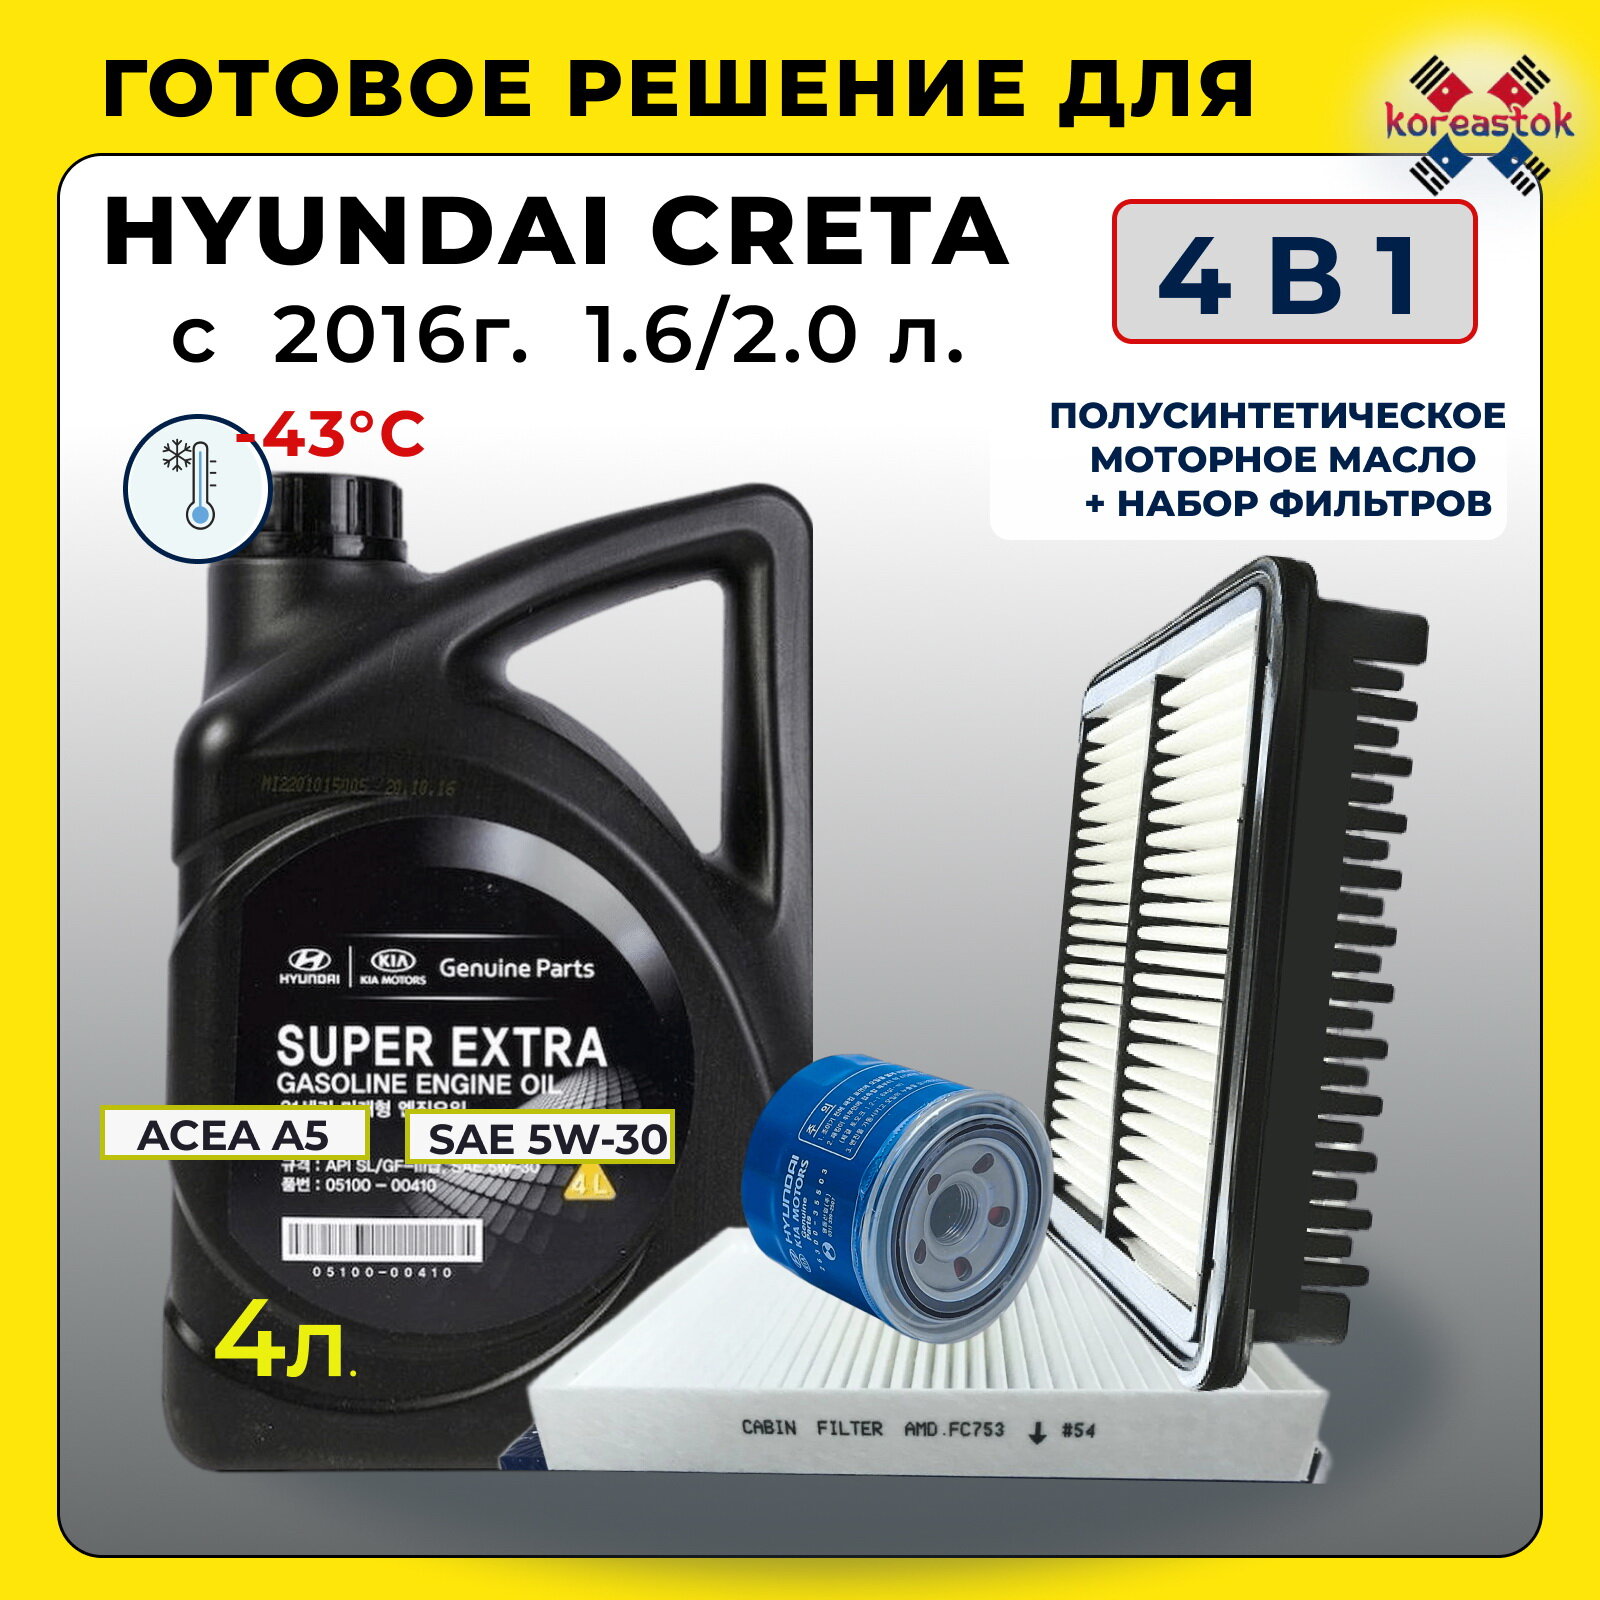 4 В 1. Комплект для ТО: масло моторное полусинтетика+ набор фильтров (масляный, воздушный, салонный) для Hyundai Creta с 2016г